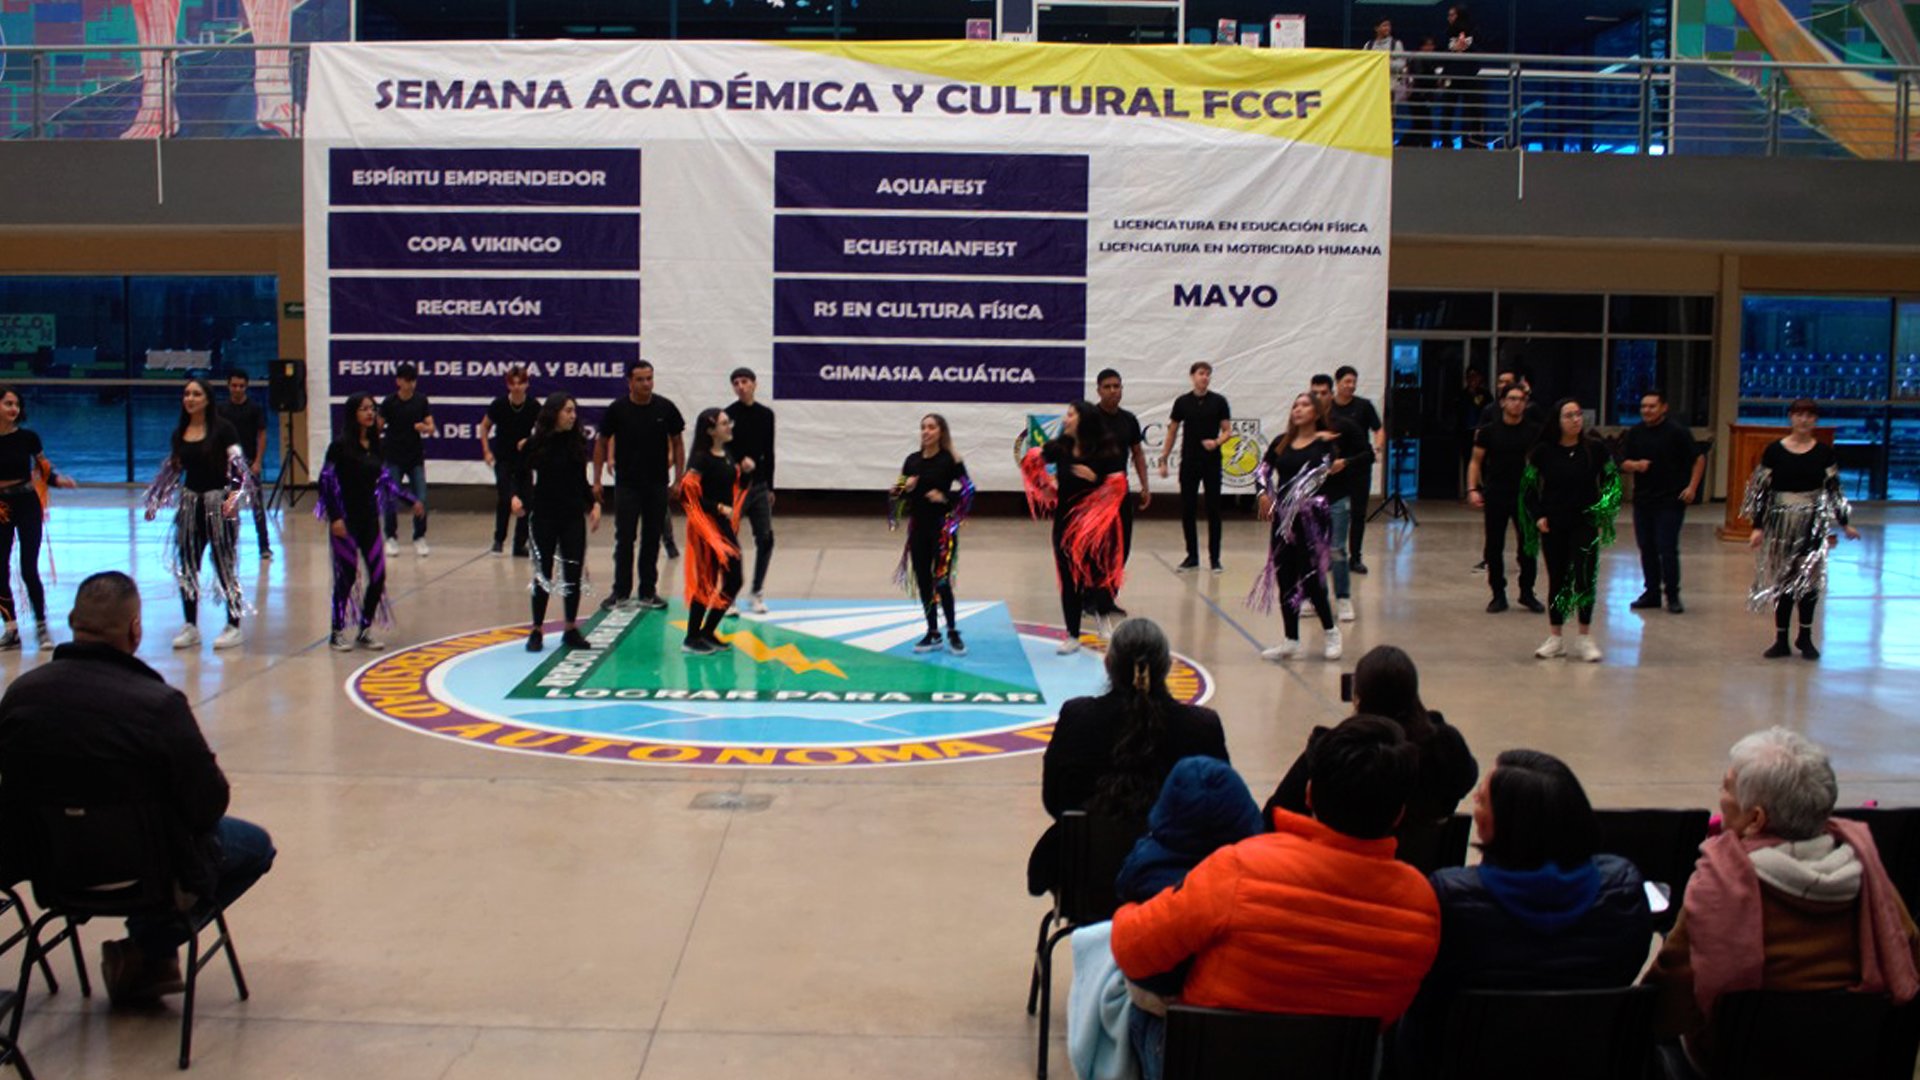 Con-Festival-de-Danza-y-Baile-clausuran-Semana-Académica_-Deportiva-y-Cultural-de-FCCF1920.jpg